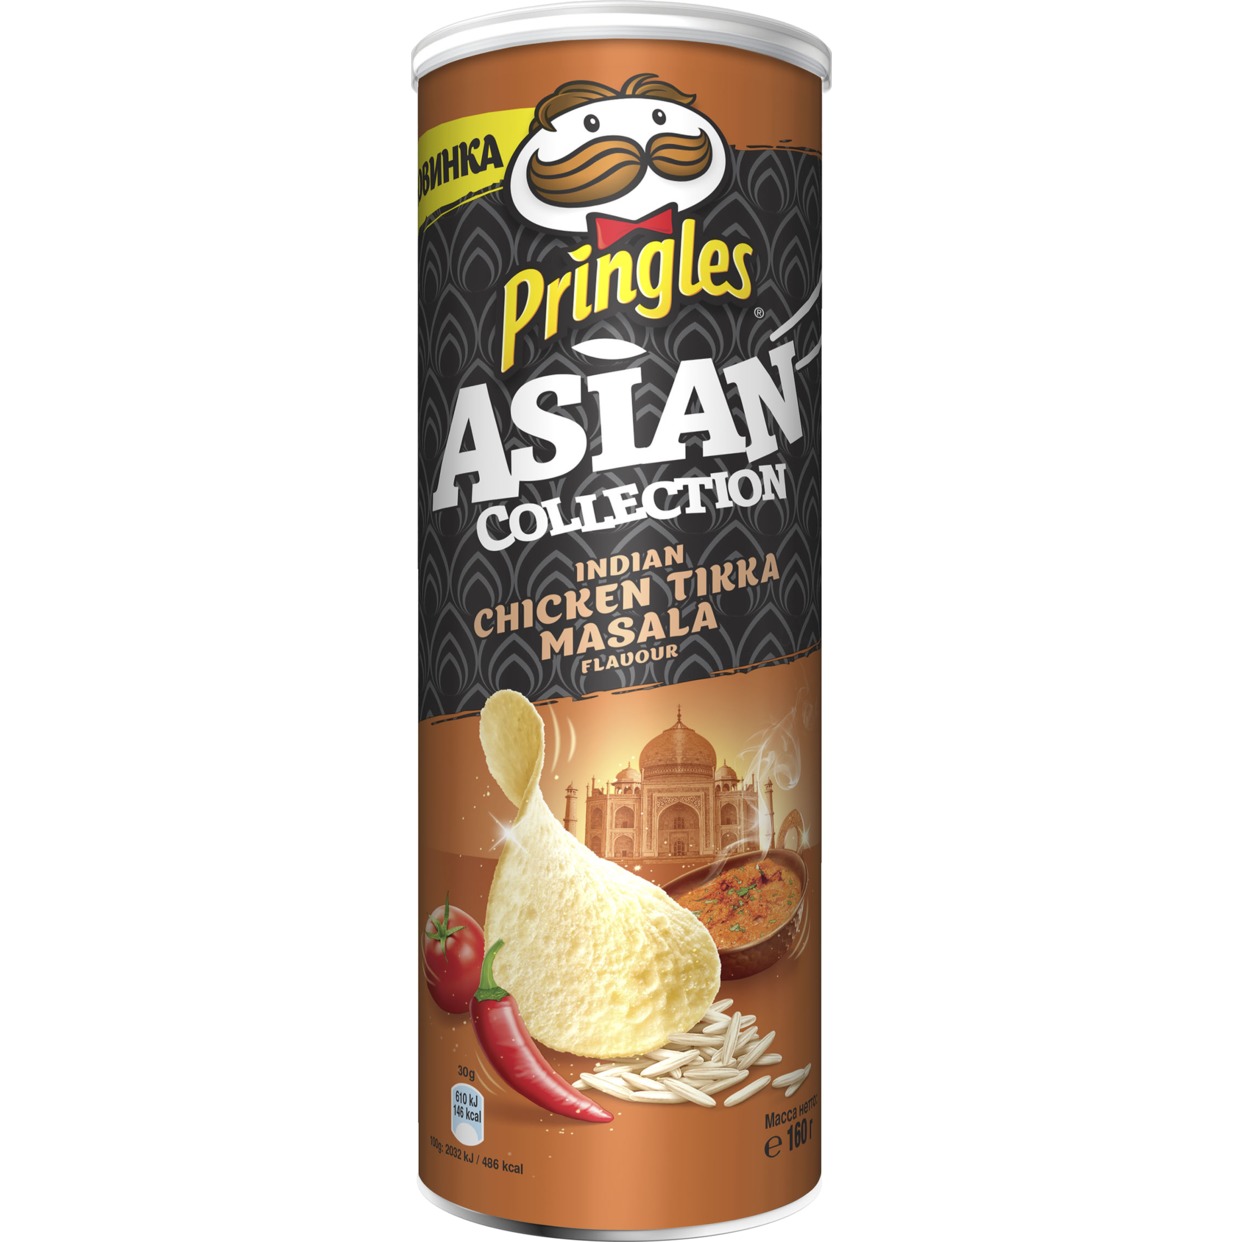 Рисовые чипсы Pringles "Asian Collection" со вкусом курицы с индийскими специями "Тикка Масала", 160 гр